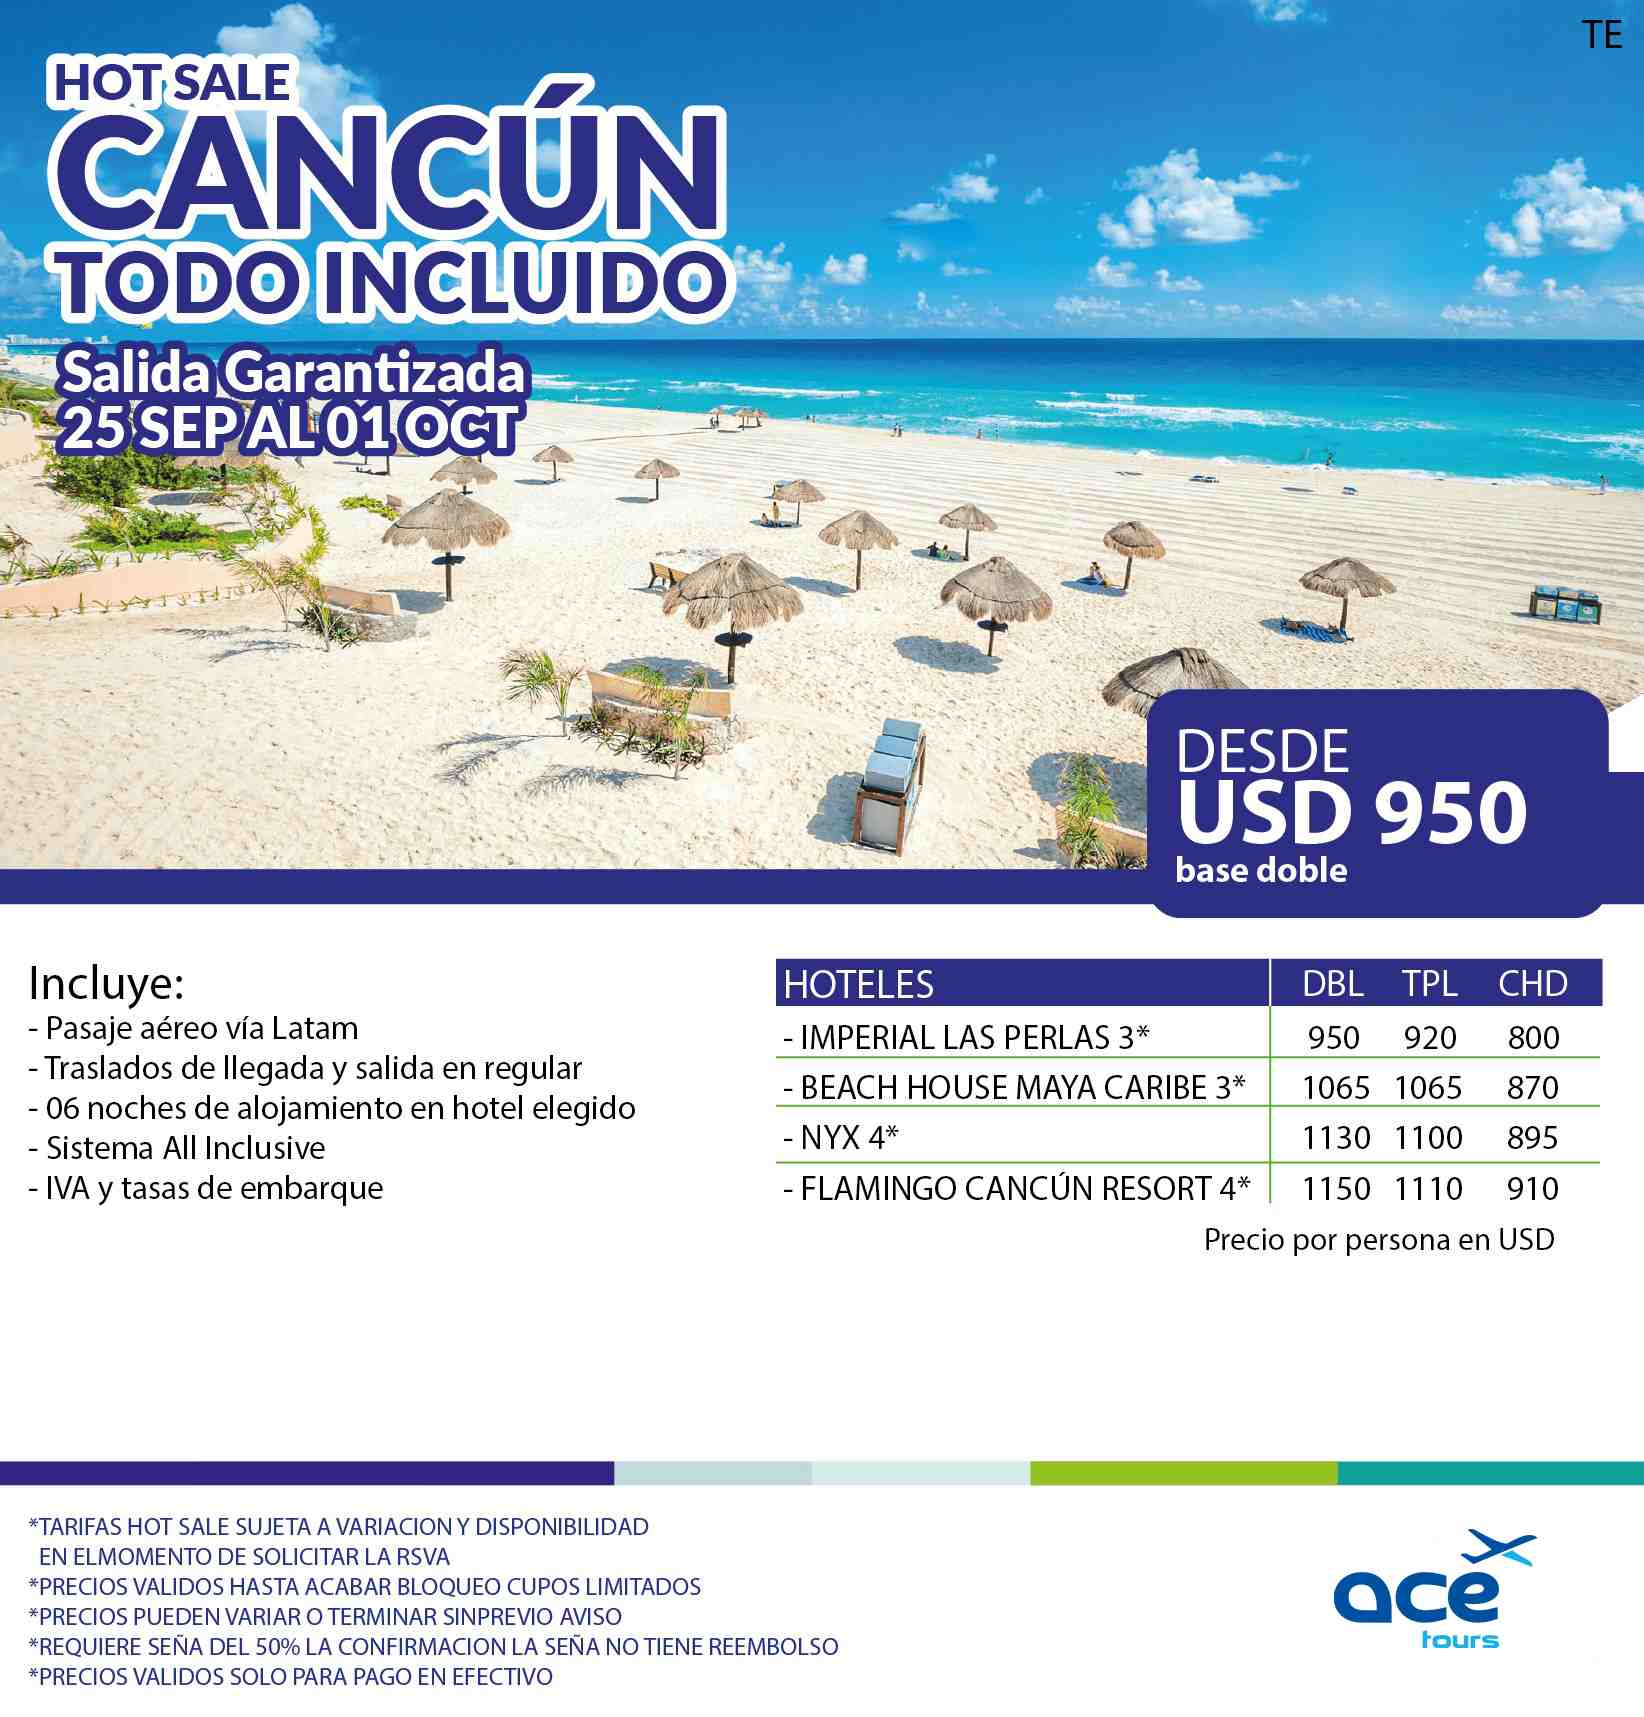 ¿Cuál es la fecha más economica para viajar a Cancún?